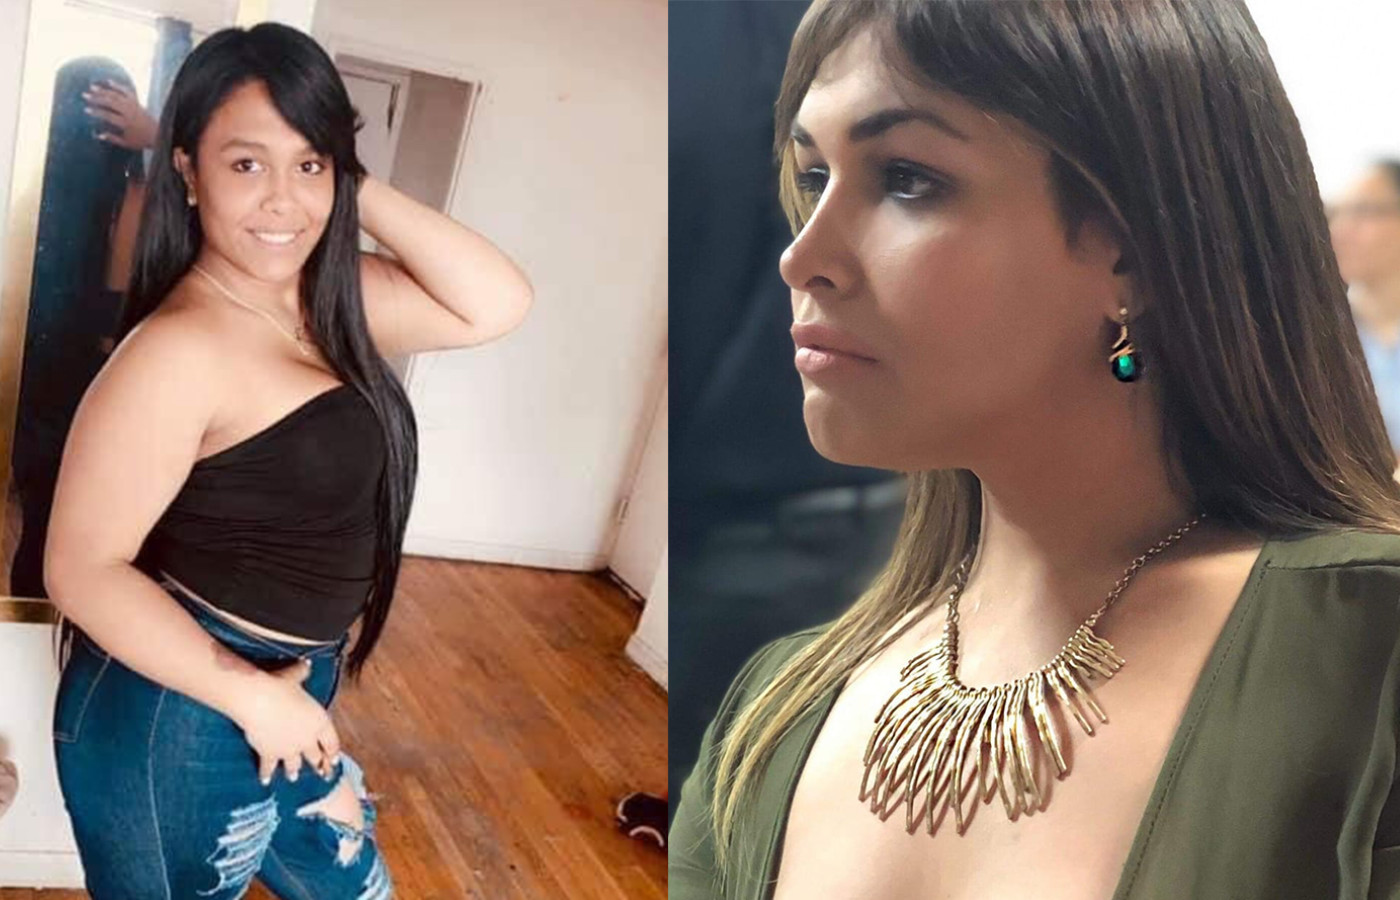 Trans women Layla Pelaez Sánchez and Serena Angelique Velázquez Ramos were ...